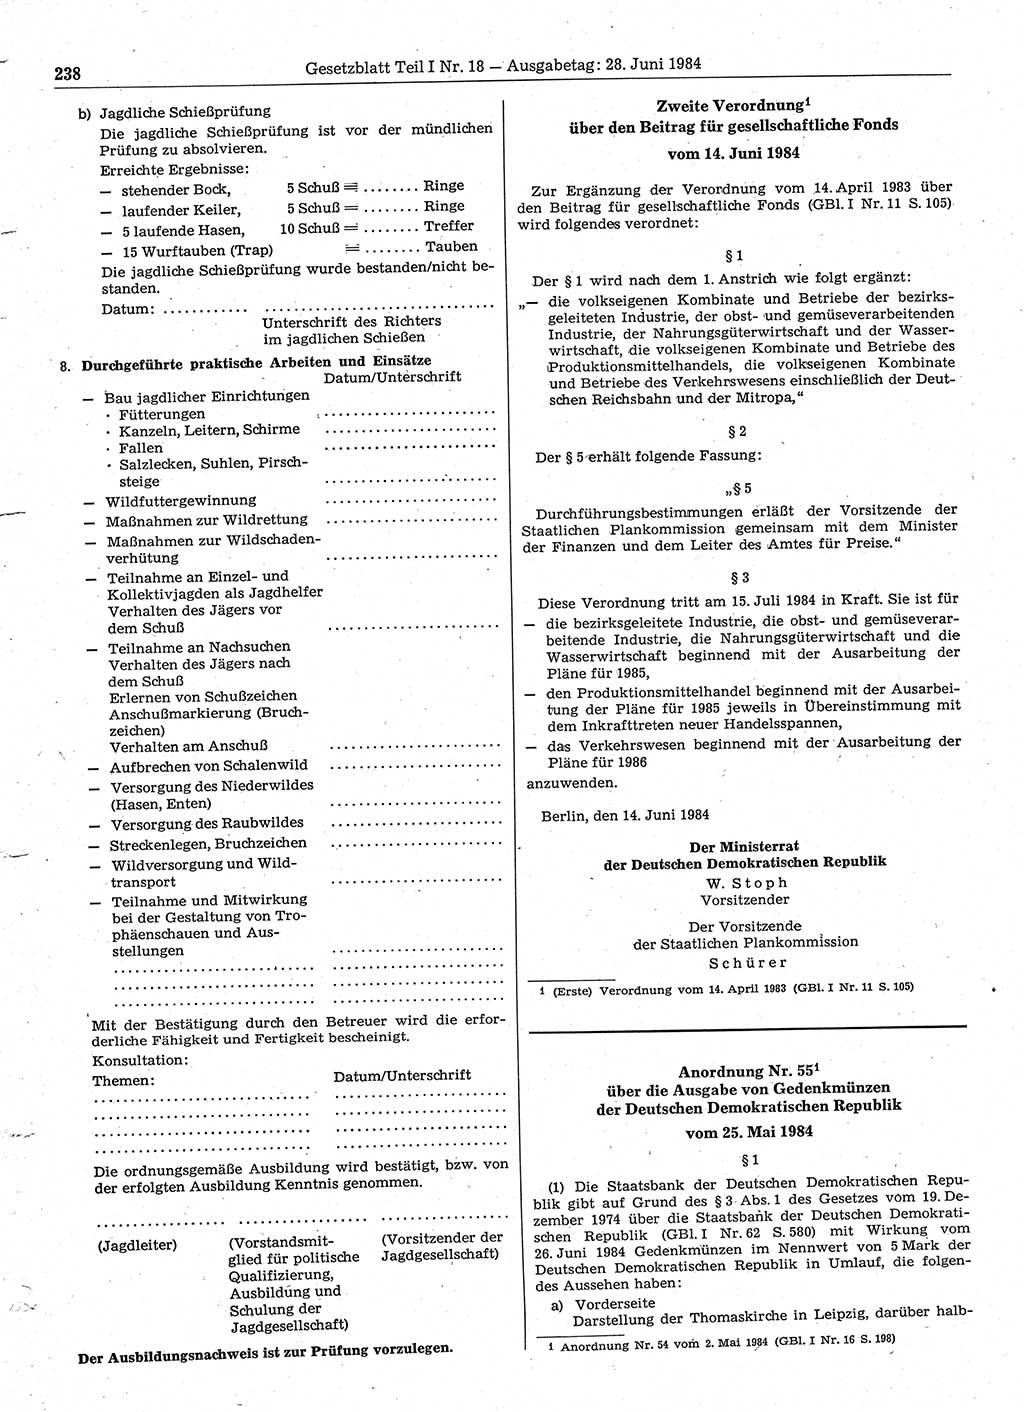 Gesetzblatt (GBl.) der Deutschen Demokratischen Republik (DDR) Teil Ⅰ 1984, Seite 238 (GBl. DDR Ⅰ 1984, S. 238)